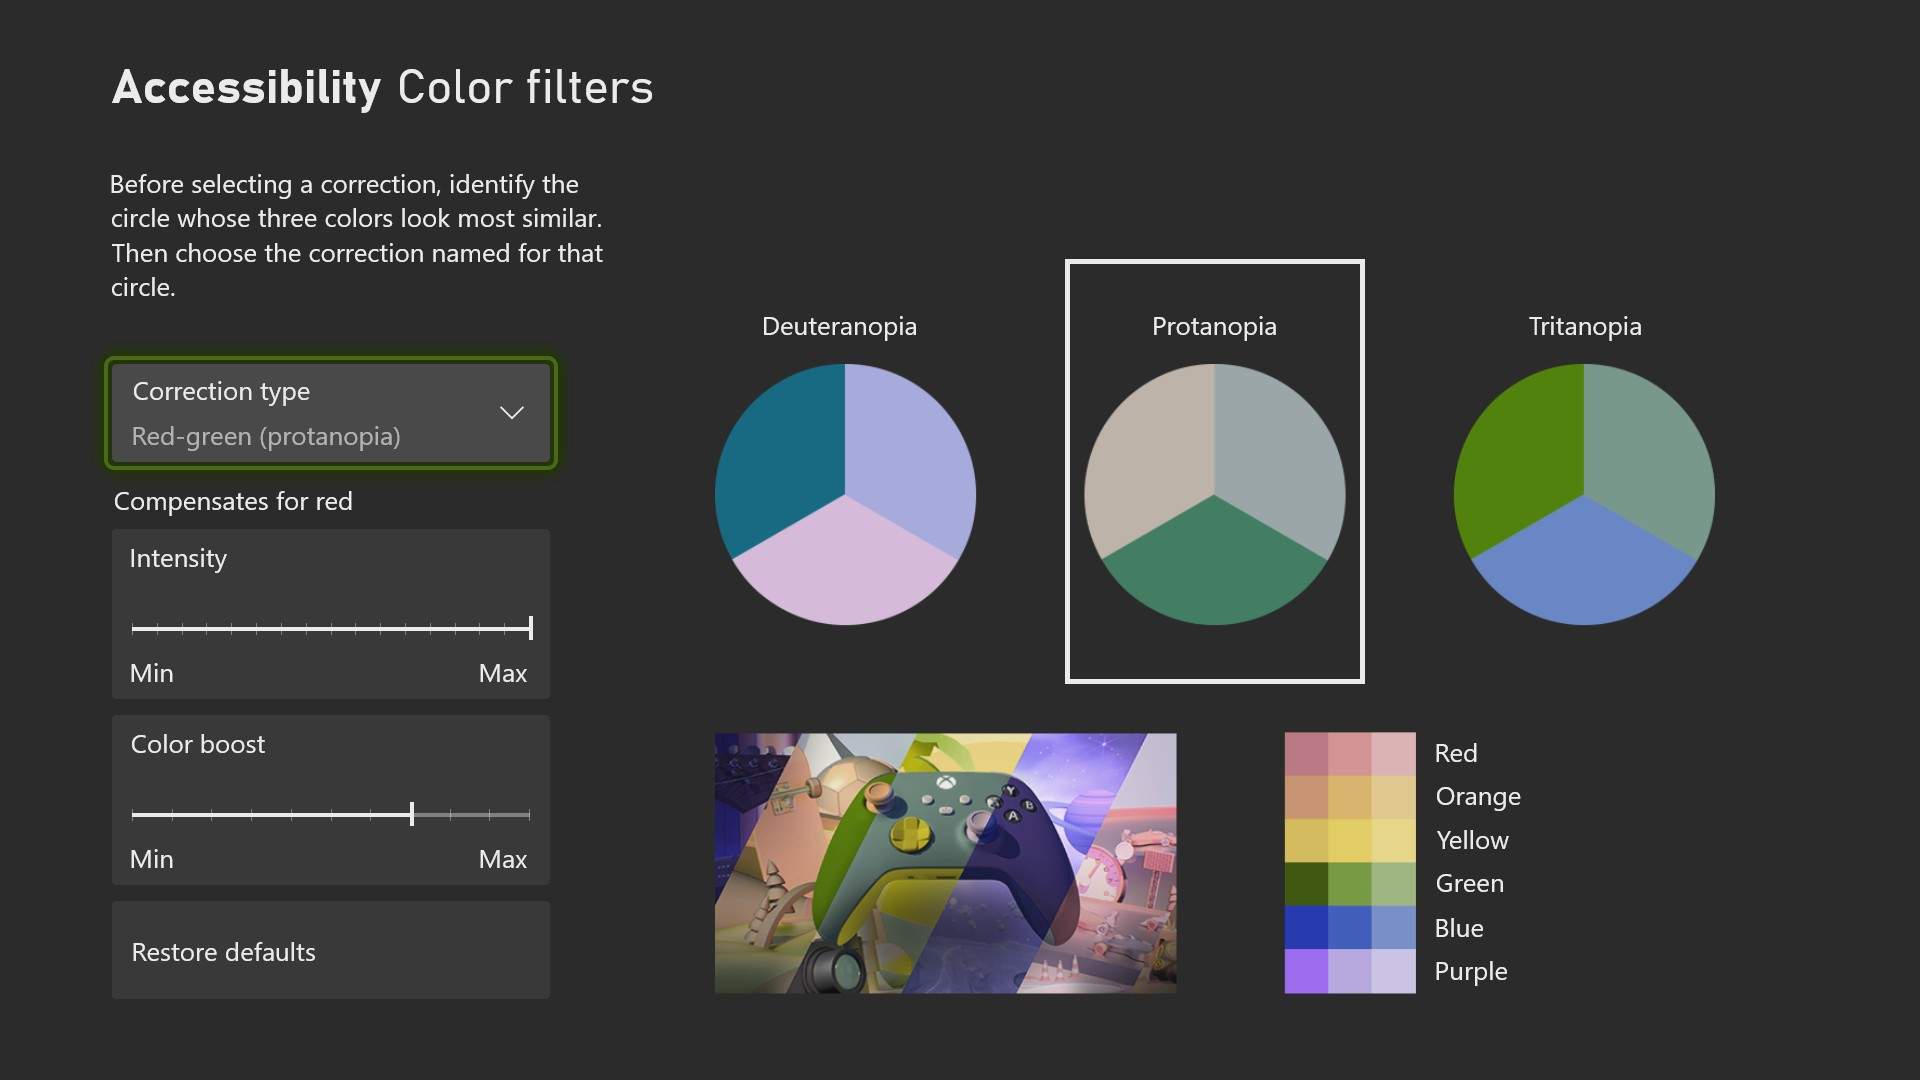 Xbox anuncia la llegada de los nuevos filtros de color mejorados - La actualización del filtro de color ha llegado a Xbox. Dirígete a las opciones de configuración y personaliza a tu gusto los contornos que desees visualizar.